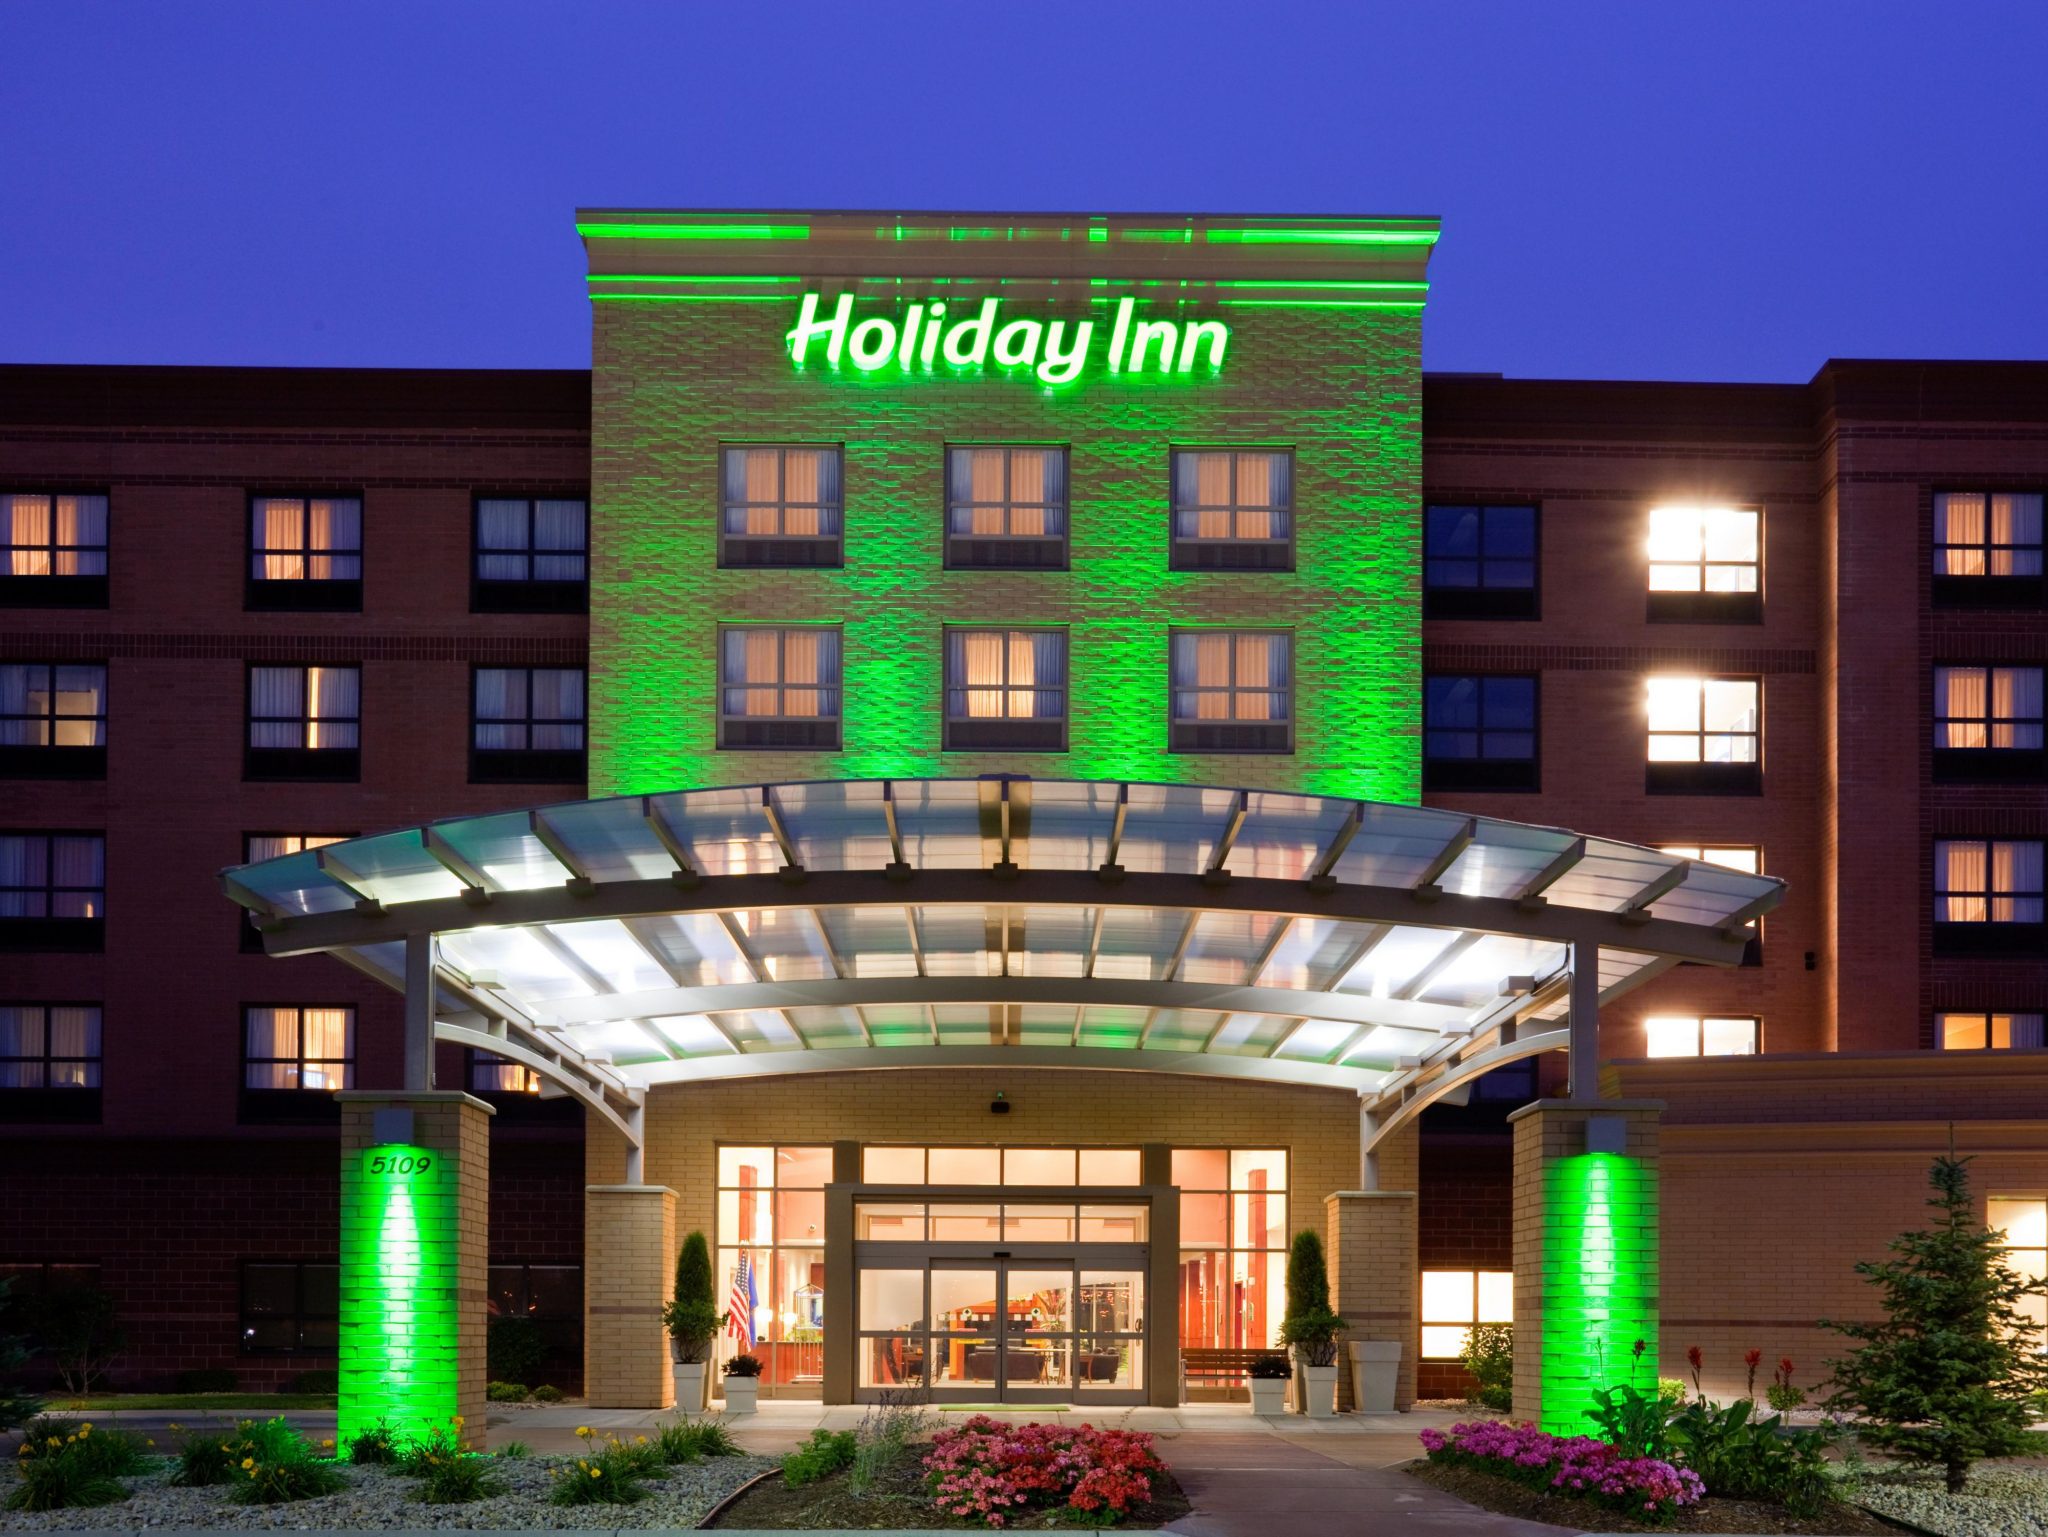 Bdsm hotels inns